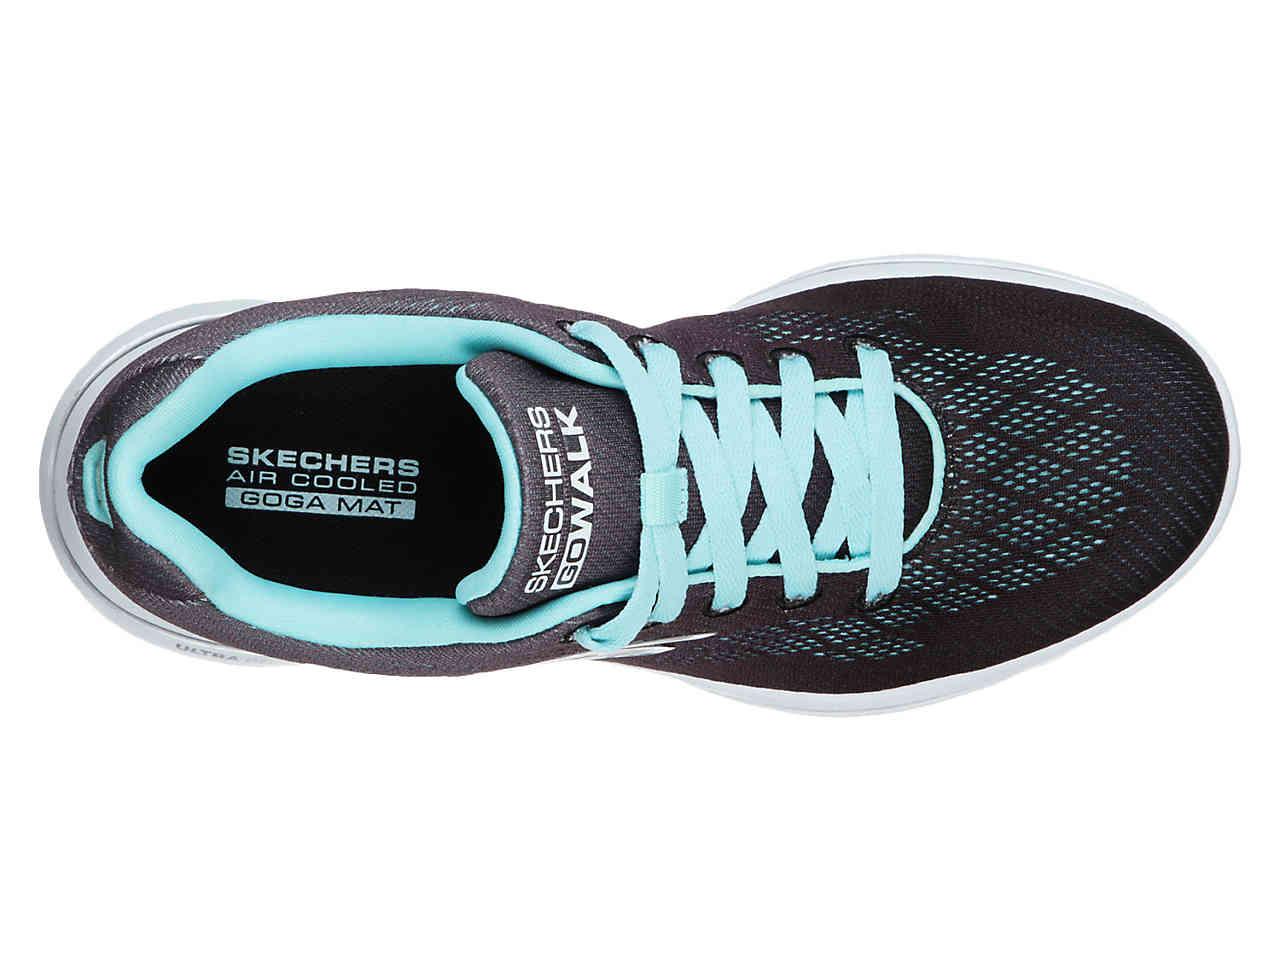 Skechers Gowalk 5 Alive Sneaker in Black/Light Blue/Grey (Blue) - Lyst